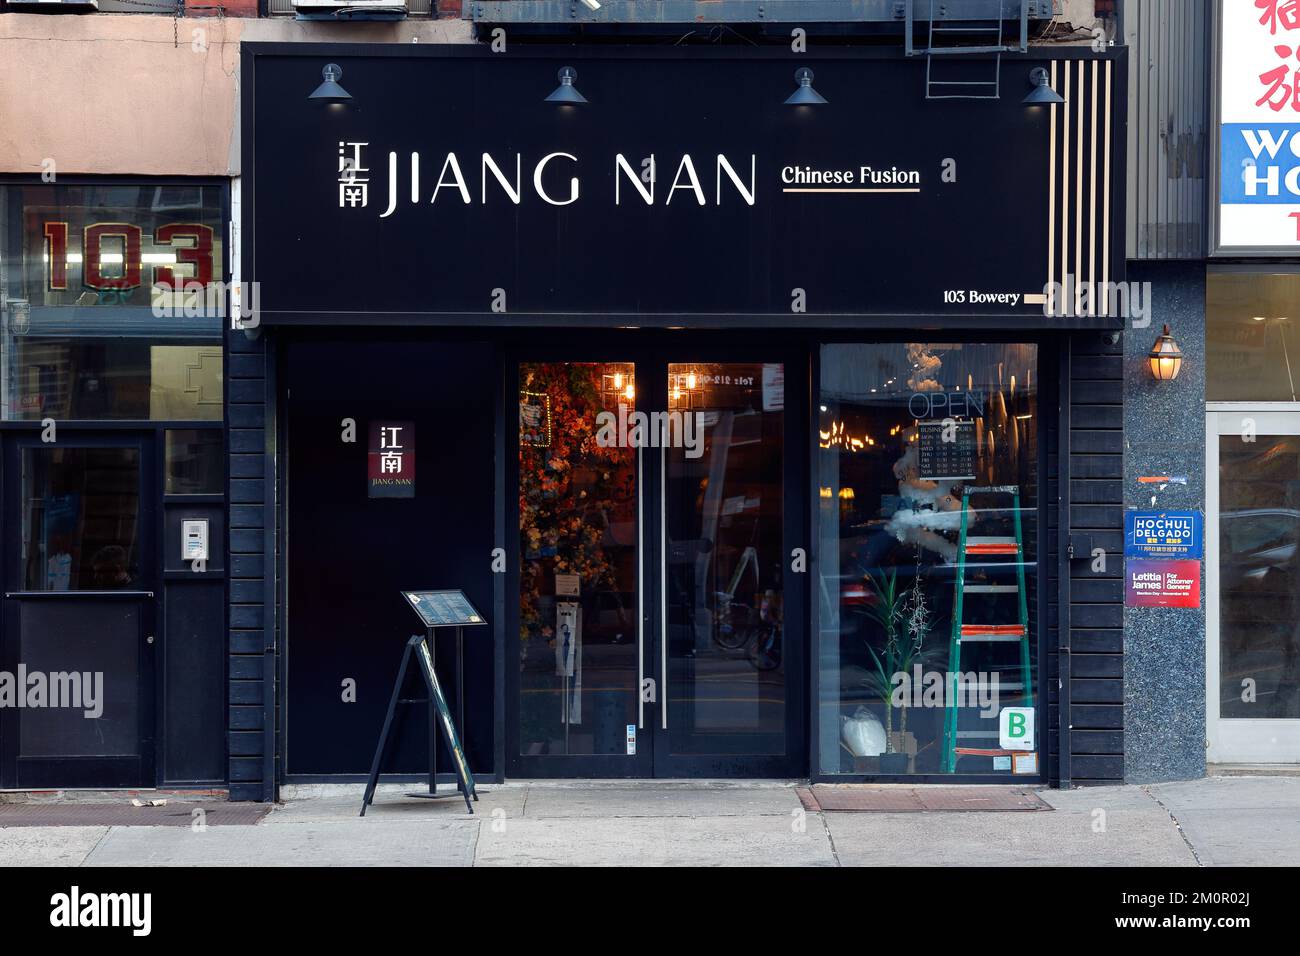 Jiang Nan 江南食府, 103 Bowery, Nueva York, Nueva York, Nueva York, foto de un restaurante chino en el barrio chino de Manhattan. Foto de stock